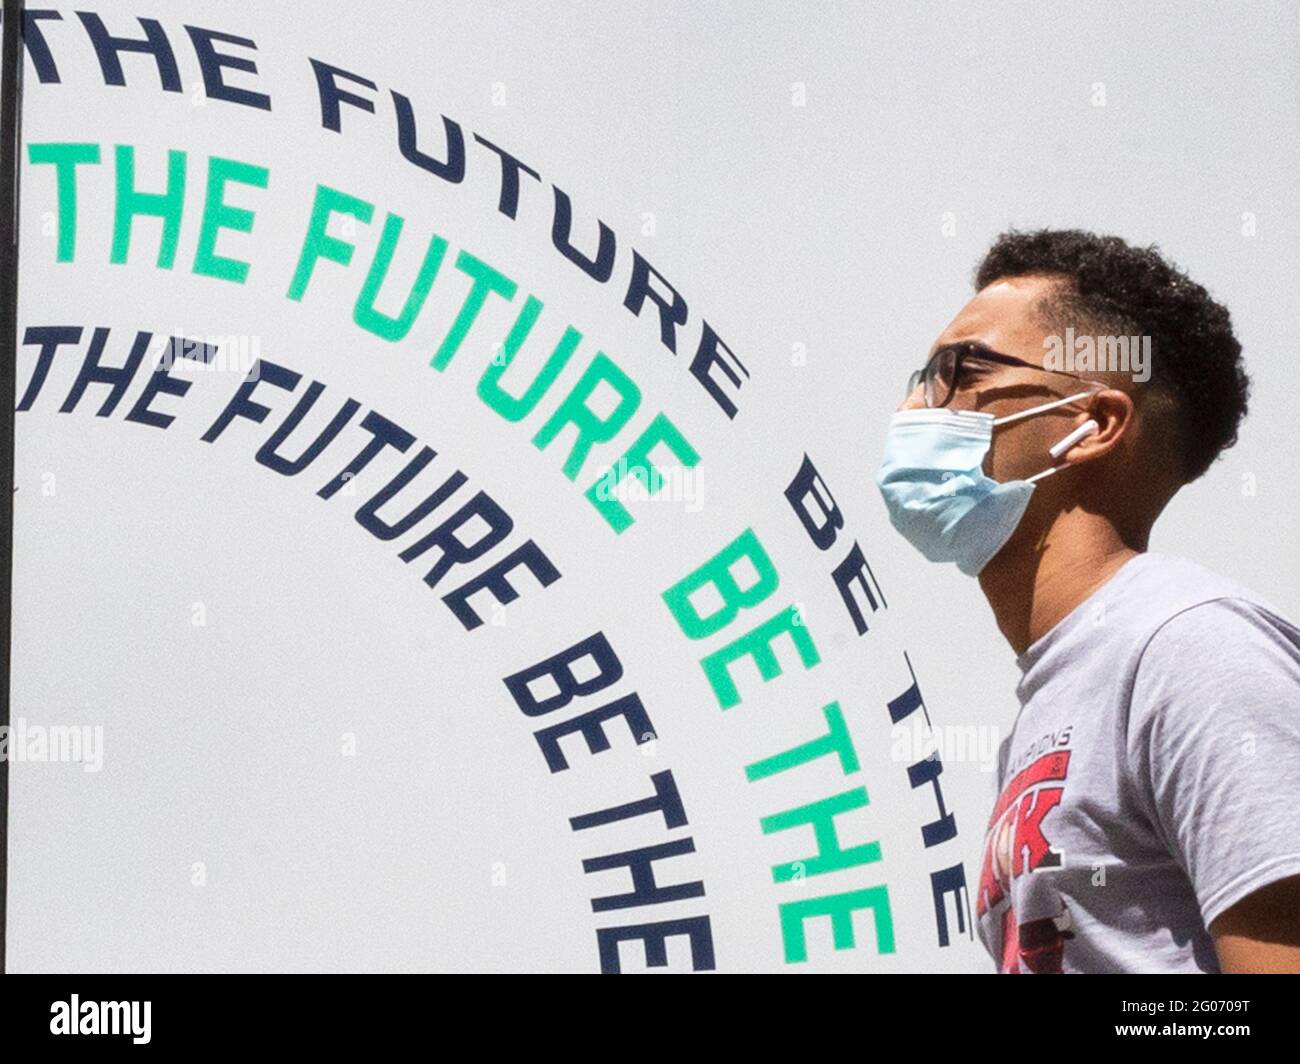 Am 1. Juni 2021 laufen Menschen in kovidierten Masken auf der Oxford Street an einem Schild mit der Aufschrift „BE THE FUTURE“ vorbei. Stockfoto